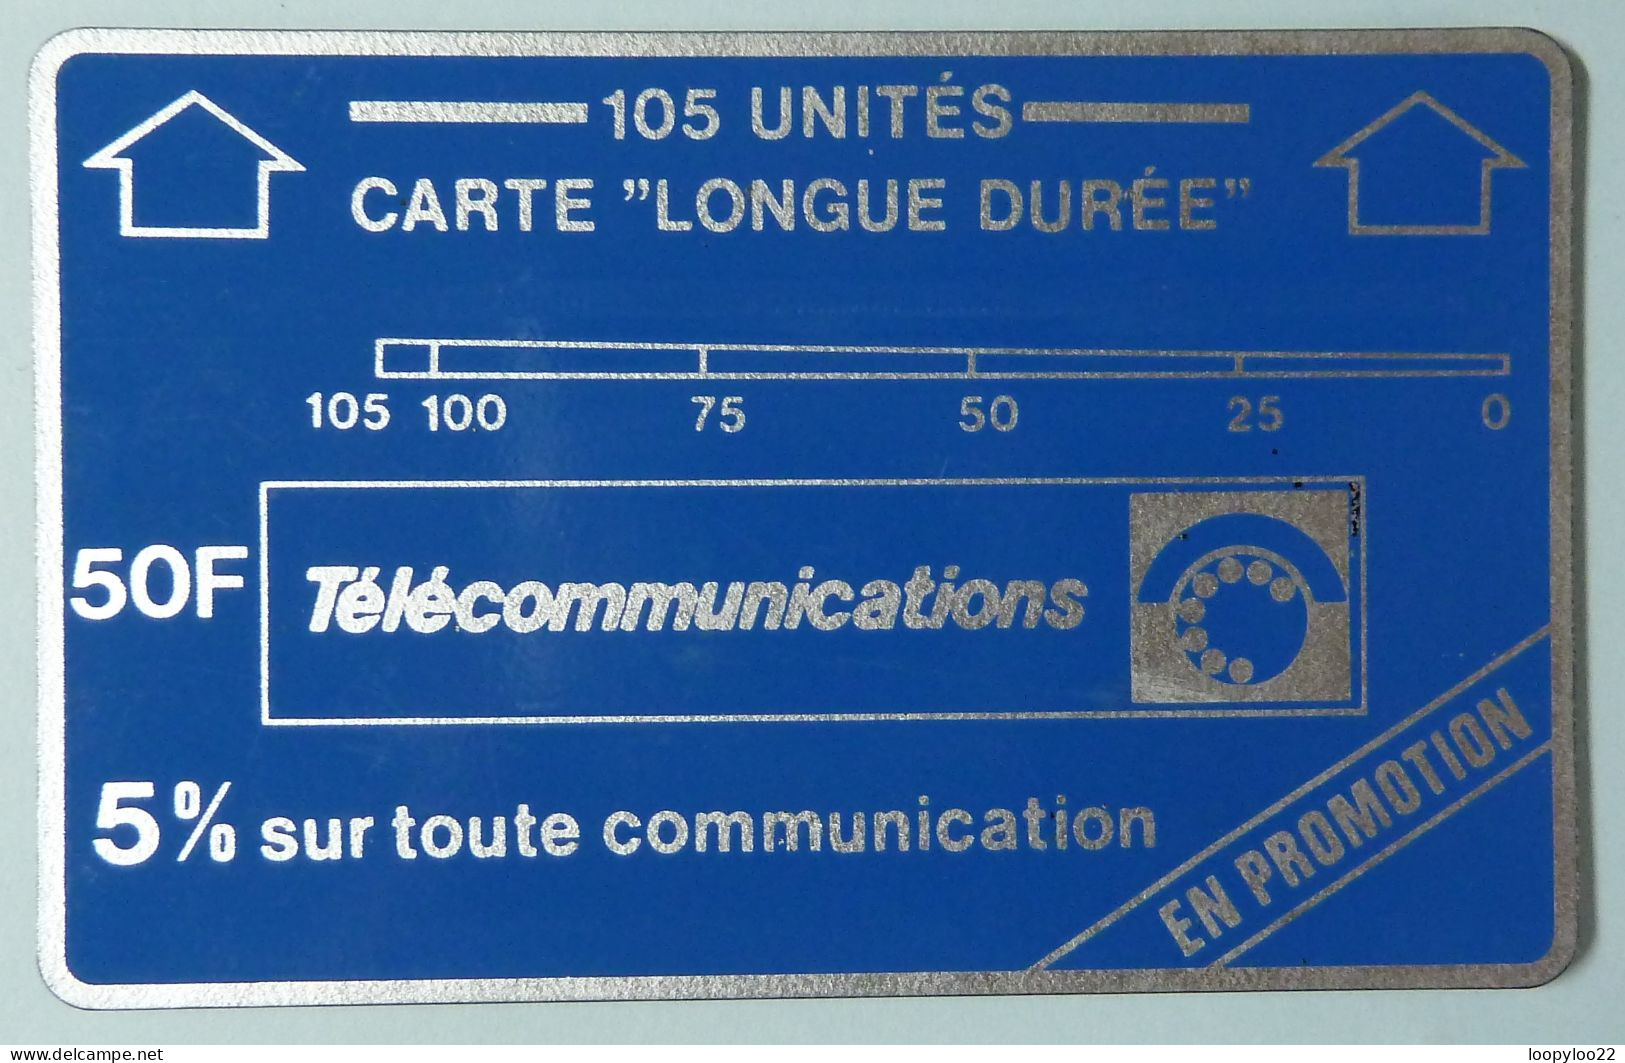 FRANC - Landis & Gyr - Carte Longue Duree - 1st Series - April 1980 - 105 Units - En Promotion - A8 - Used - Internes